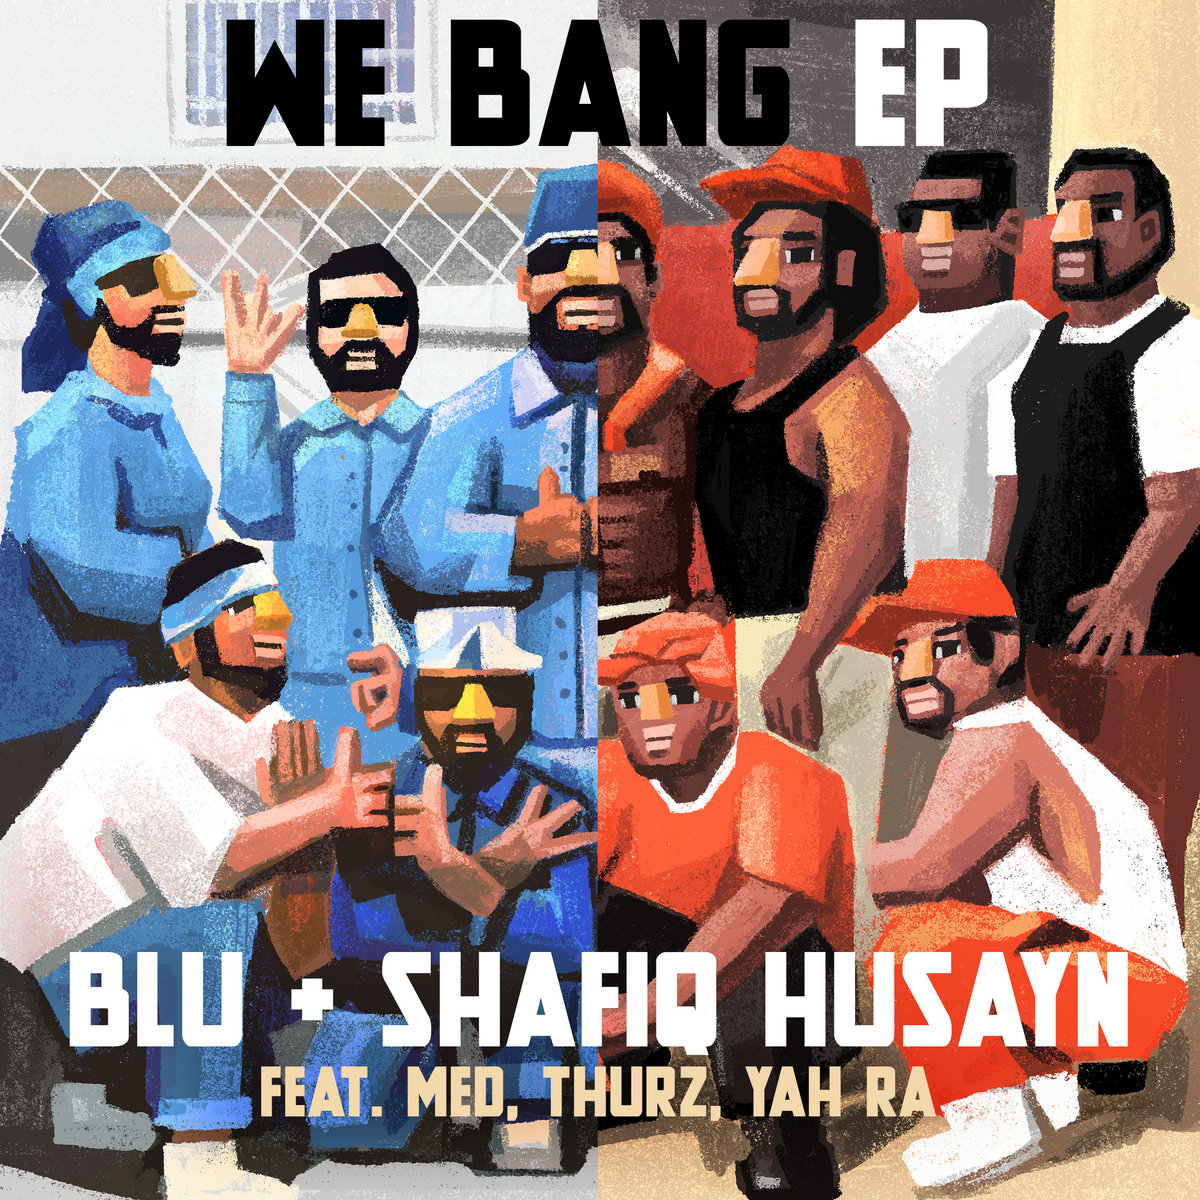 We_bang_ep_blu_shafiq_husayn